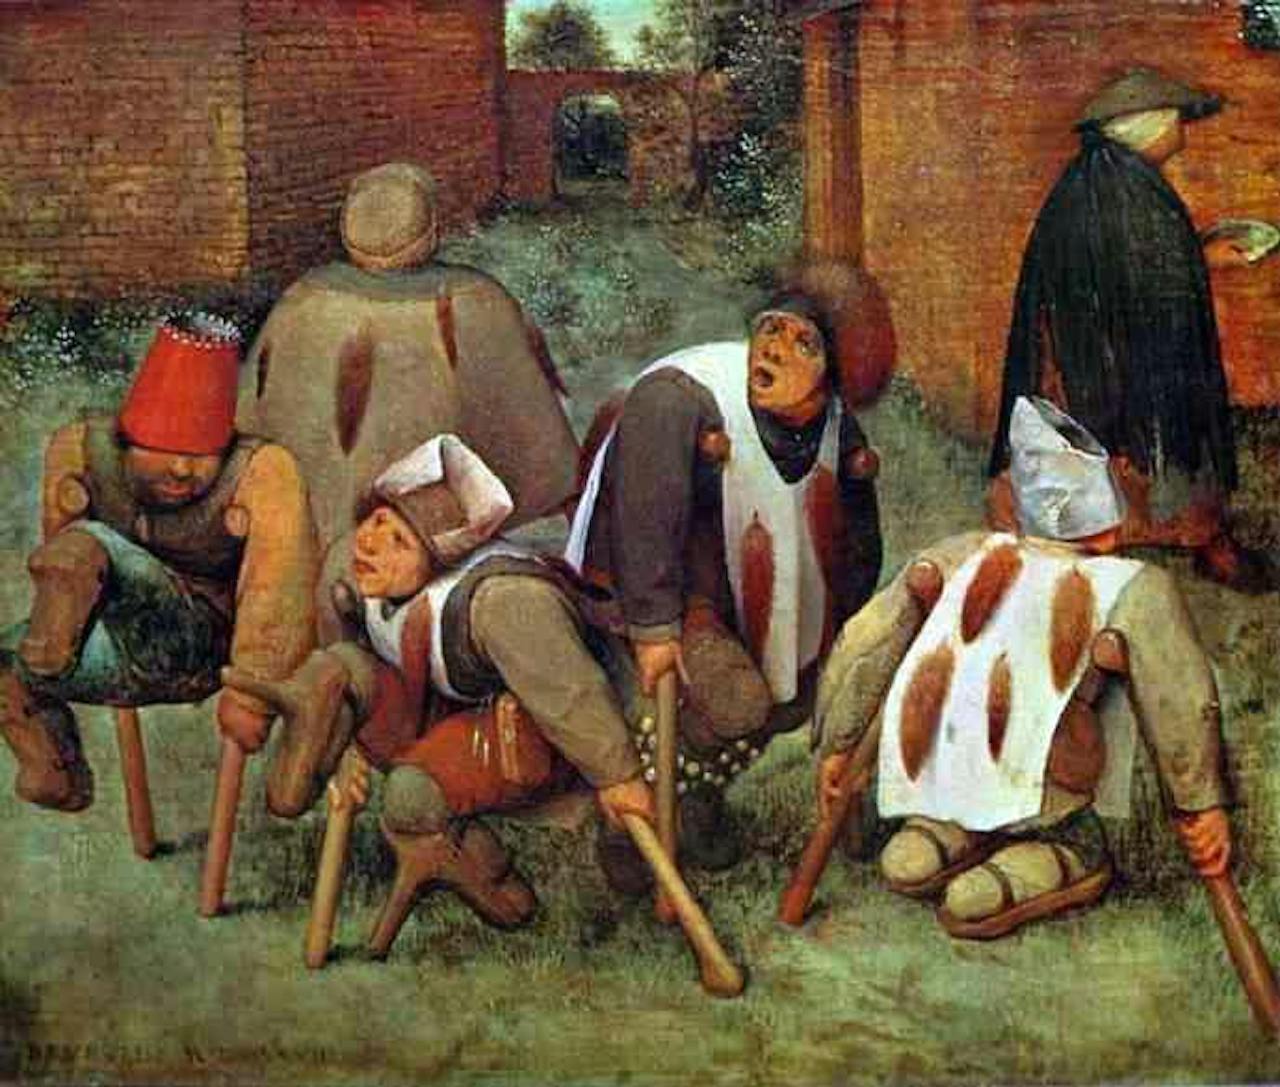 Een schilderij van Pieter Bruegel, The Elder The Cripples. Op de prent is een groep mannen te zien die invalide zijn.